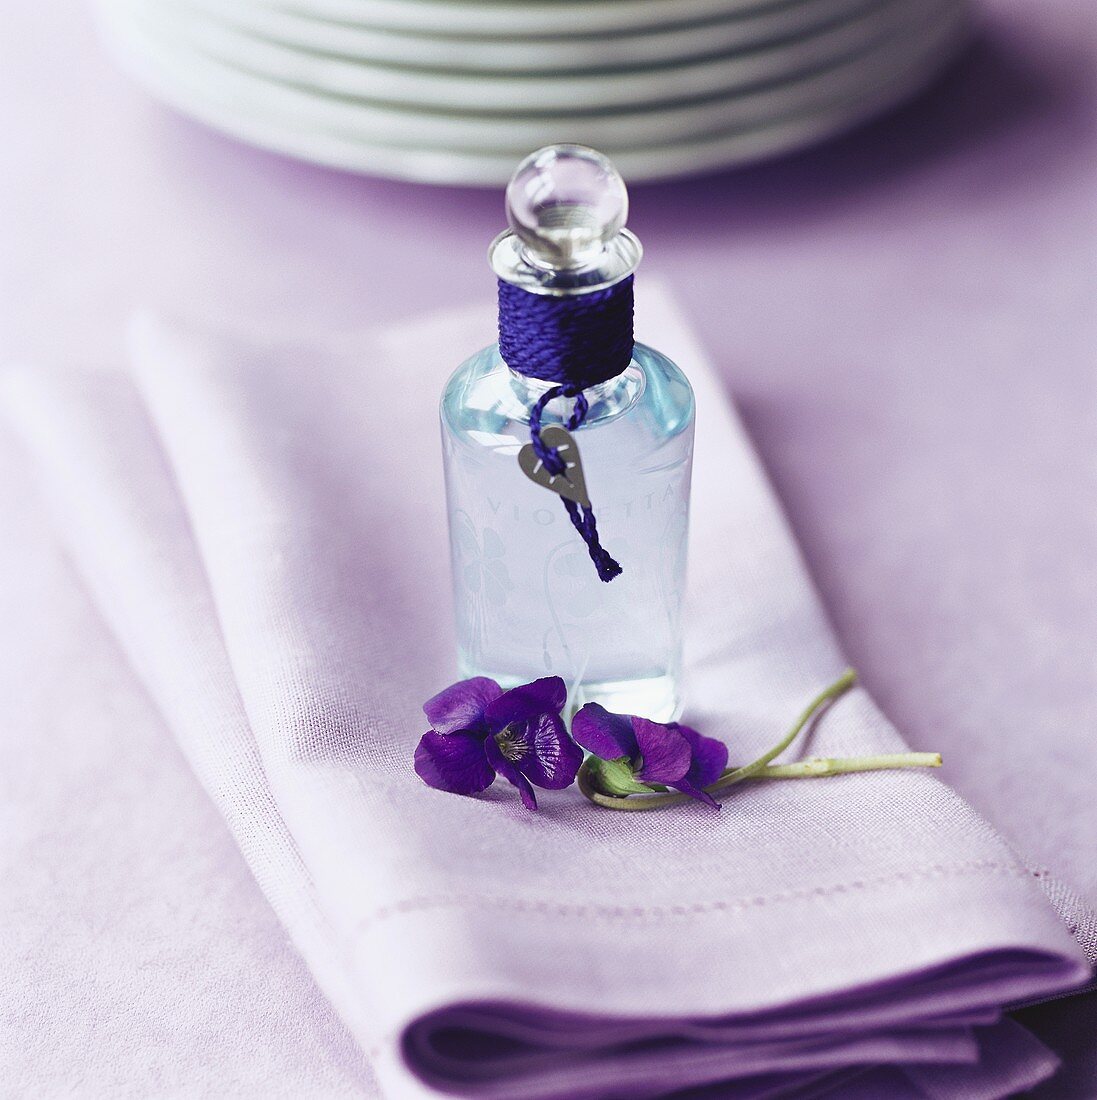 Flasche Veilchenwasser auf violetter Serviette